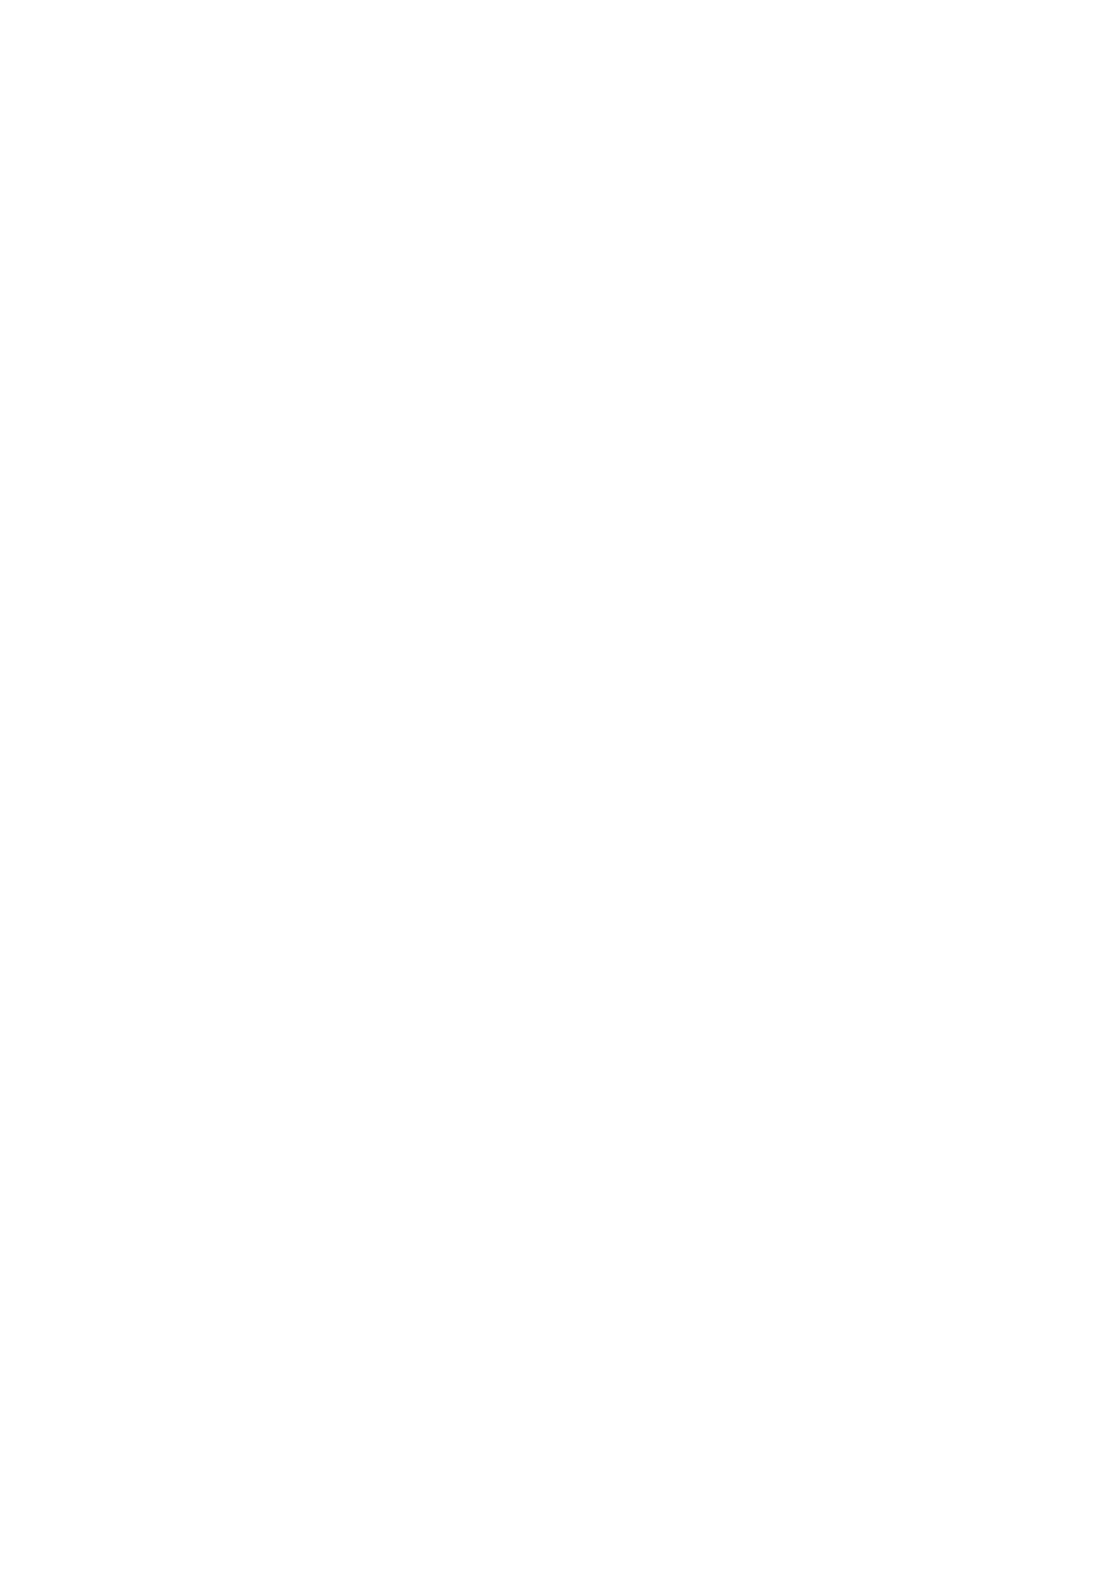 Bendigo and Adelaide Bank logo pour fonds sombres (PNG transparent)